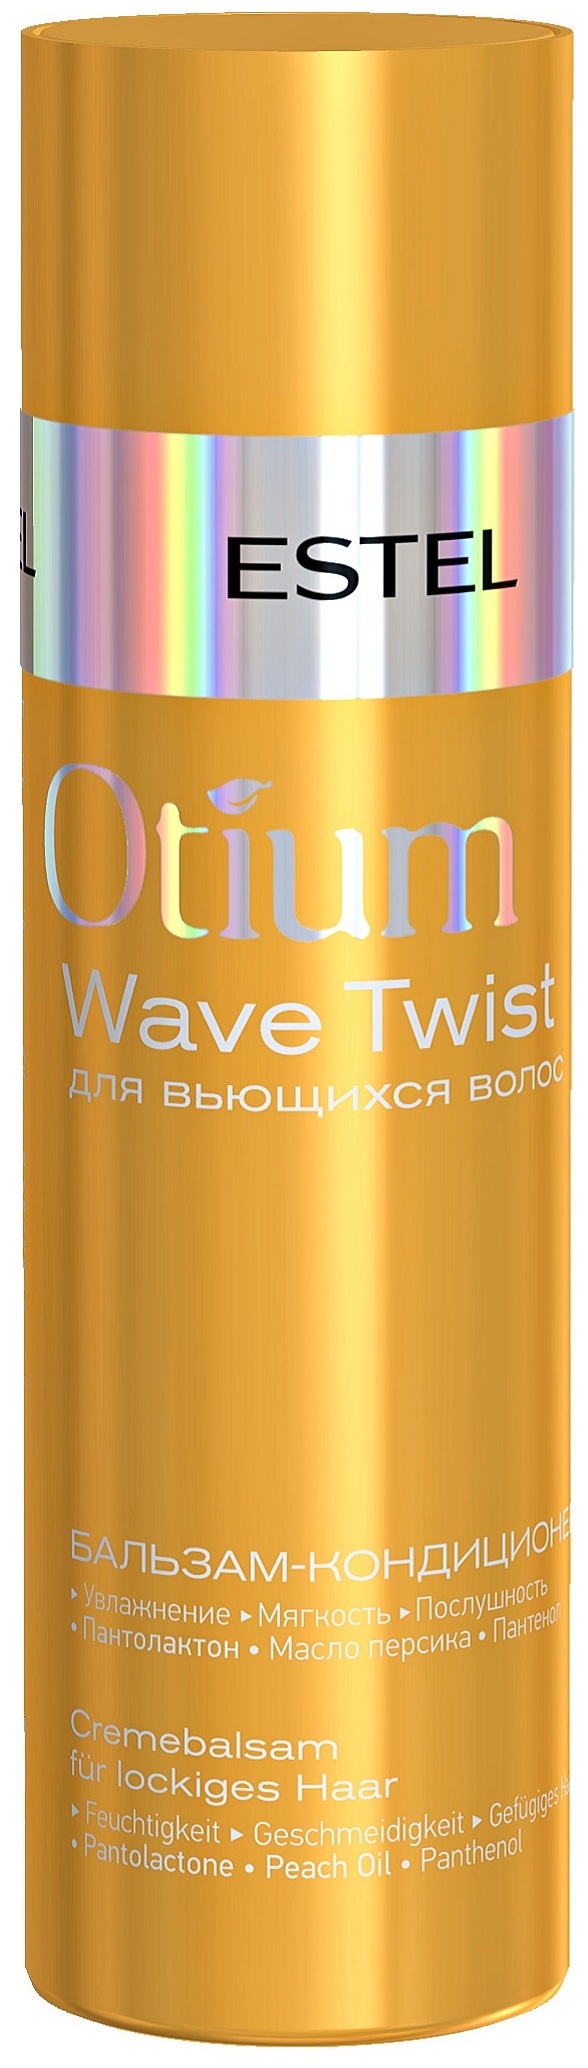 Otium color life. Крем-шампунь для вьющихся волос Otium Wave Twist (250 мл). Шампунь-активатор роста волос Otium unique, 250 мл. Estel Otium Aqua шампунь. Estel Miracle Revive.